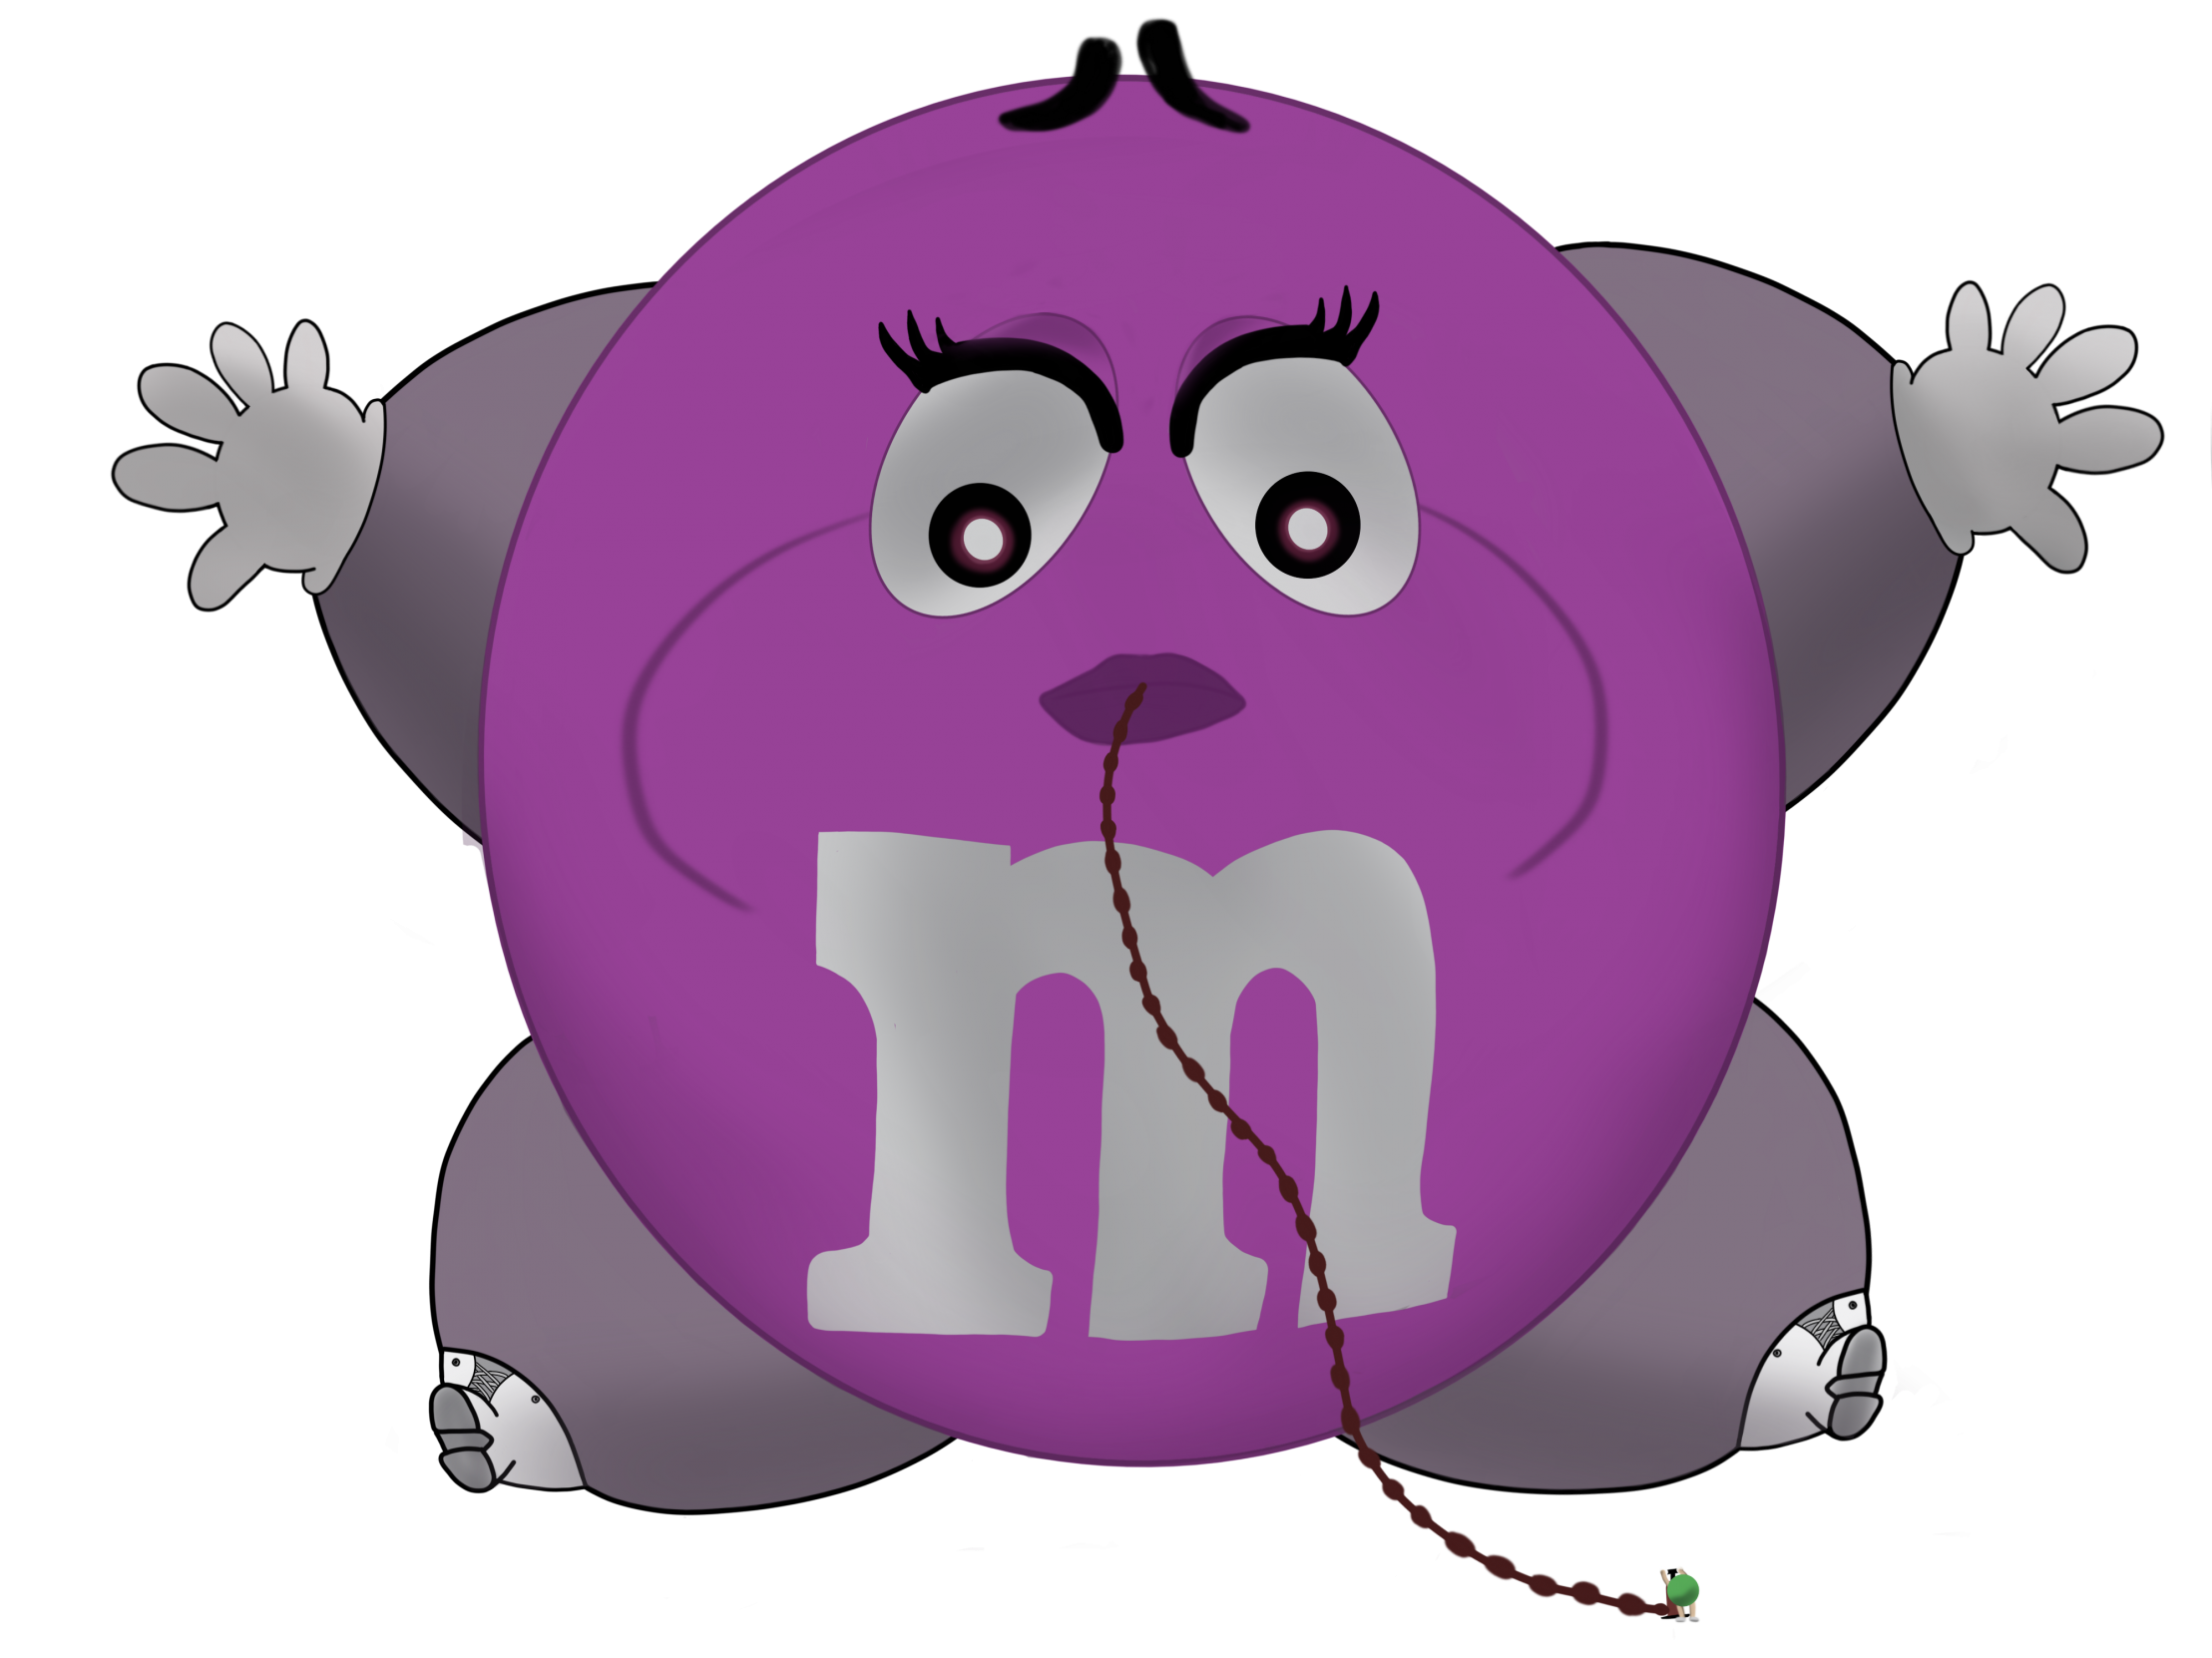 m&m purple